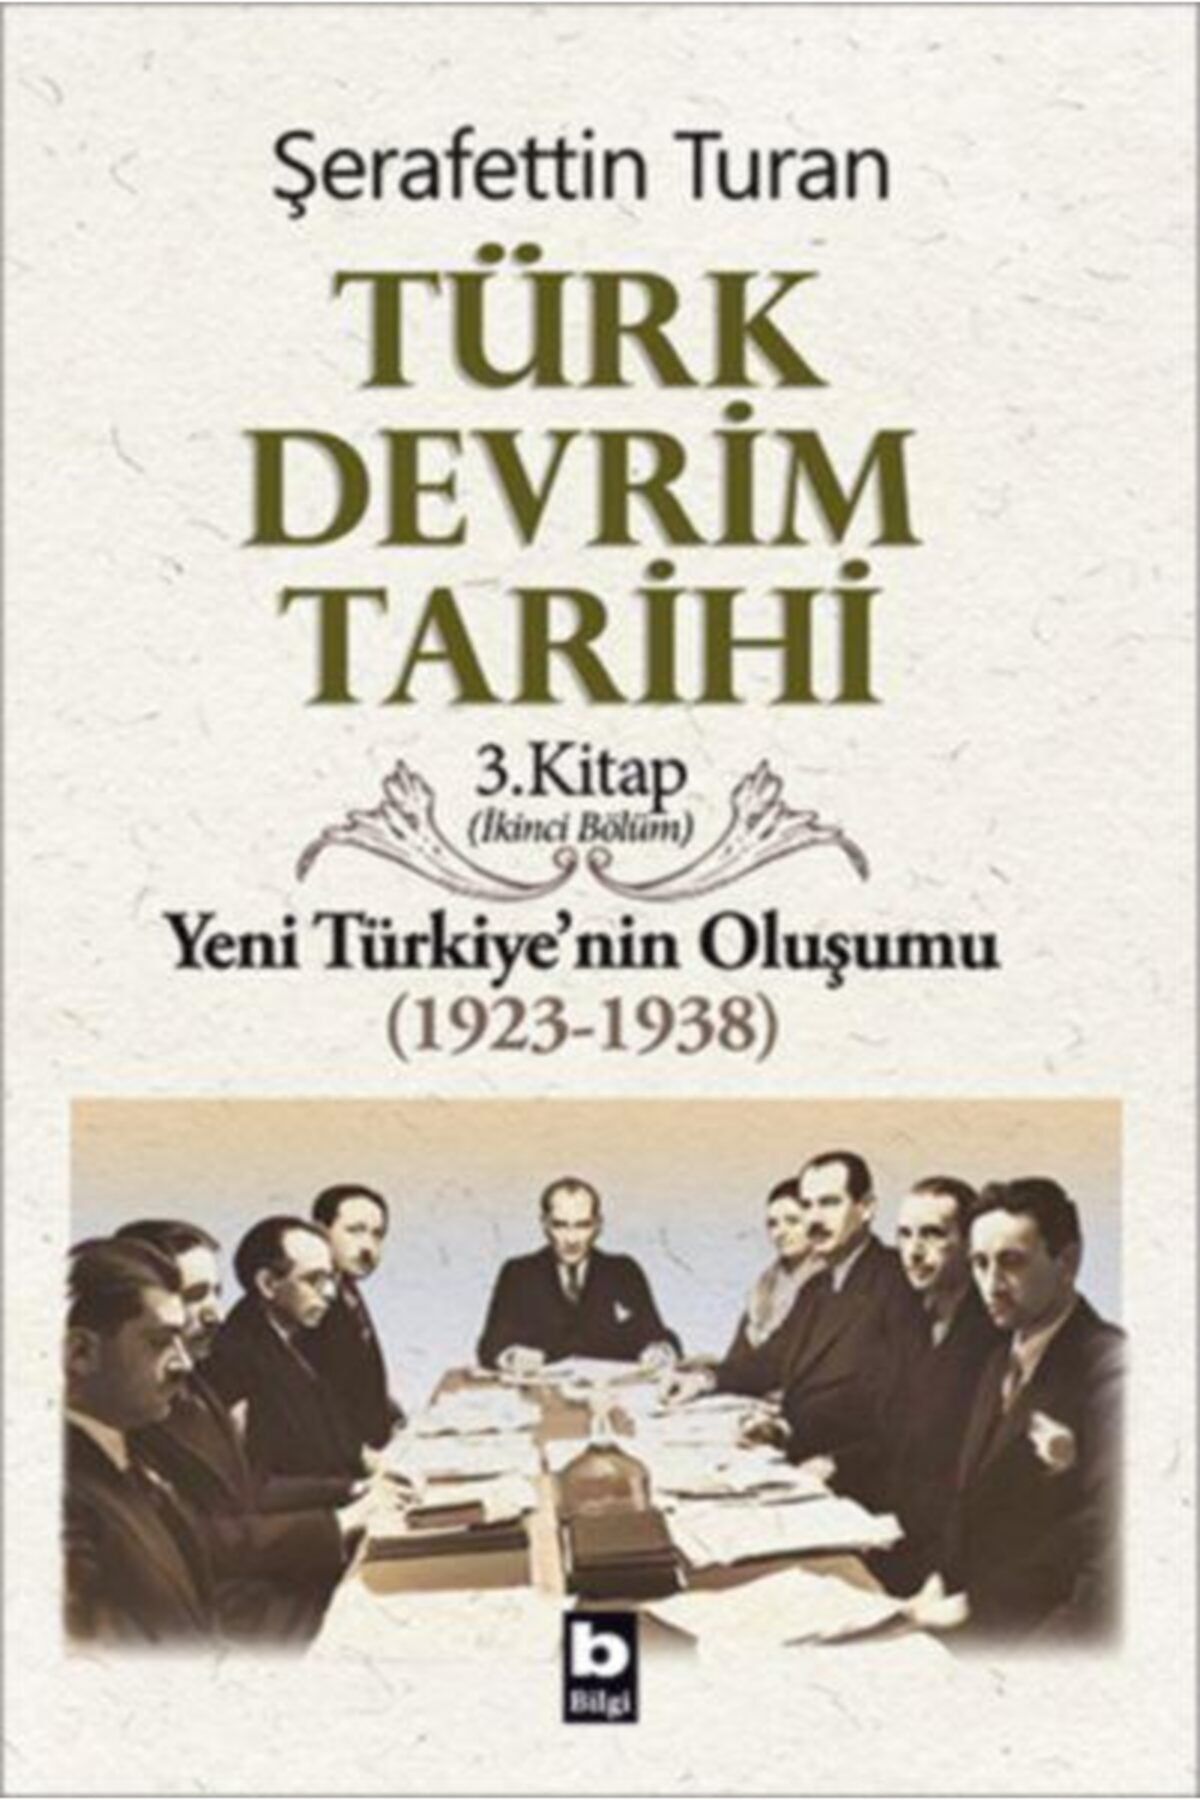 Bilgi Yayınları Türk Devrim Tarihi 3. Kitap Yeni Türkiye'nin Oluşumu Ikinci Bölüm